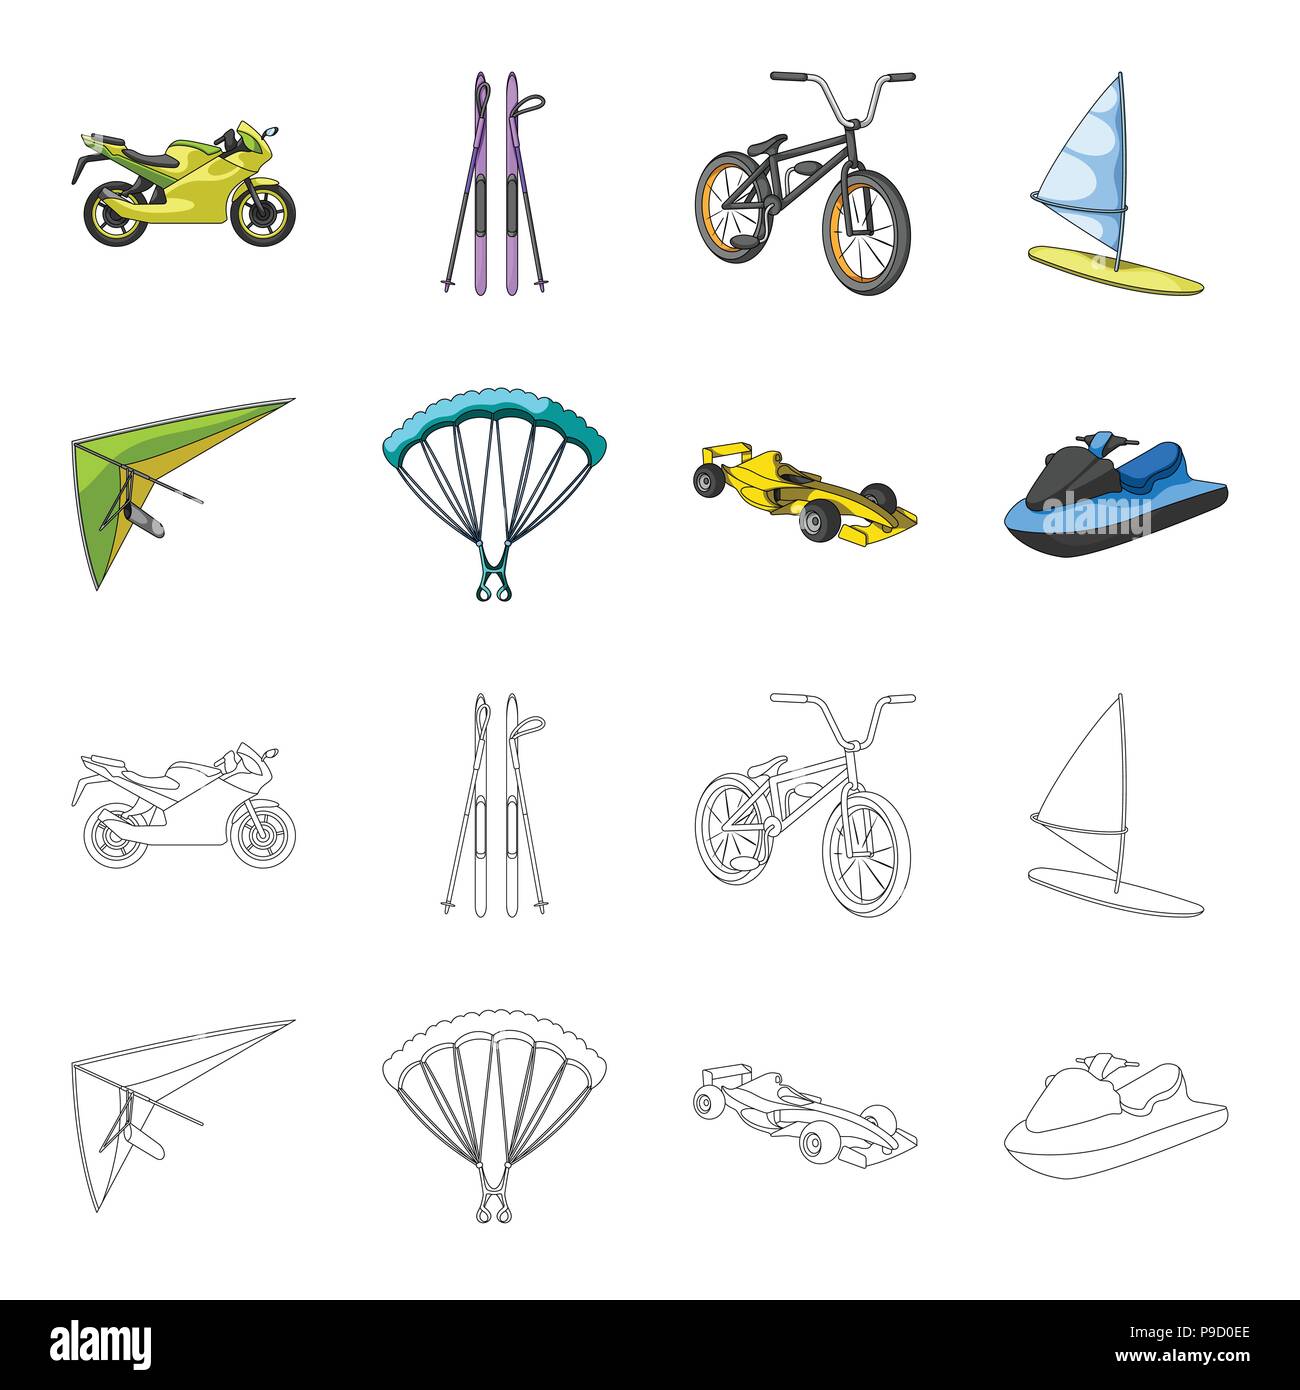 Hängegleiter, Fallschirm, Rennwagen, Wasser-scooter. Extreme Sport Set Sammlung Icons im Cartoon, Outline style Vektor Symbol lieferbar Abbildung. Stock Vektor